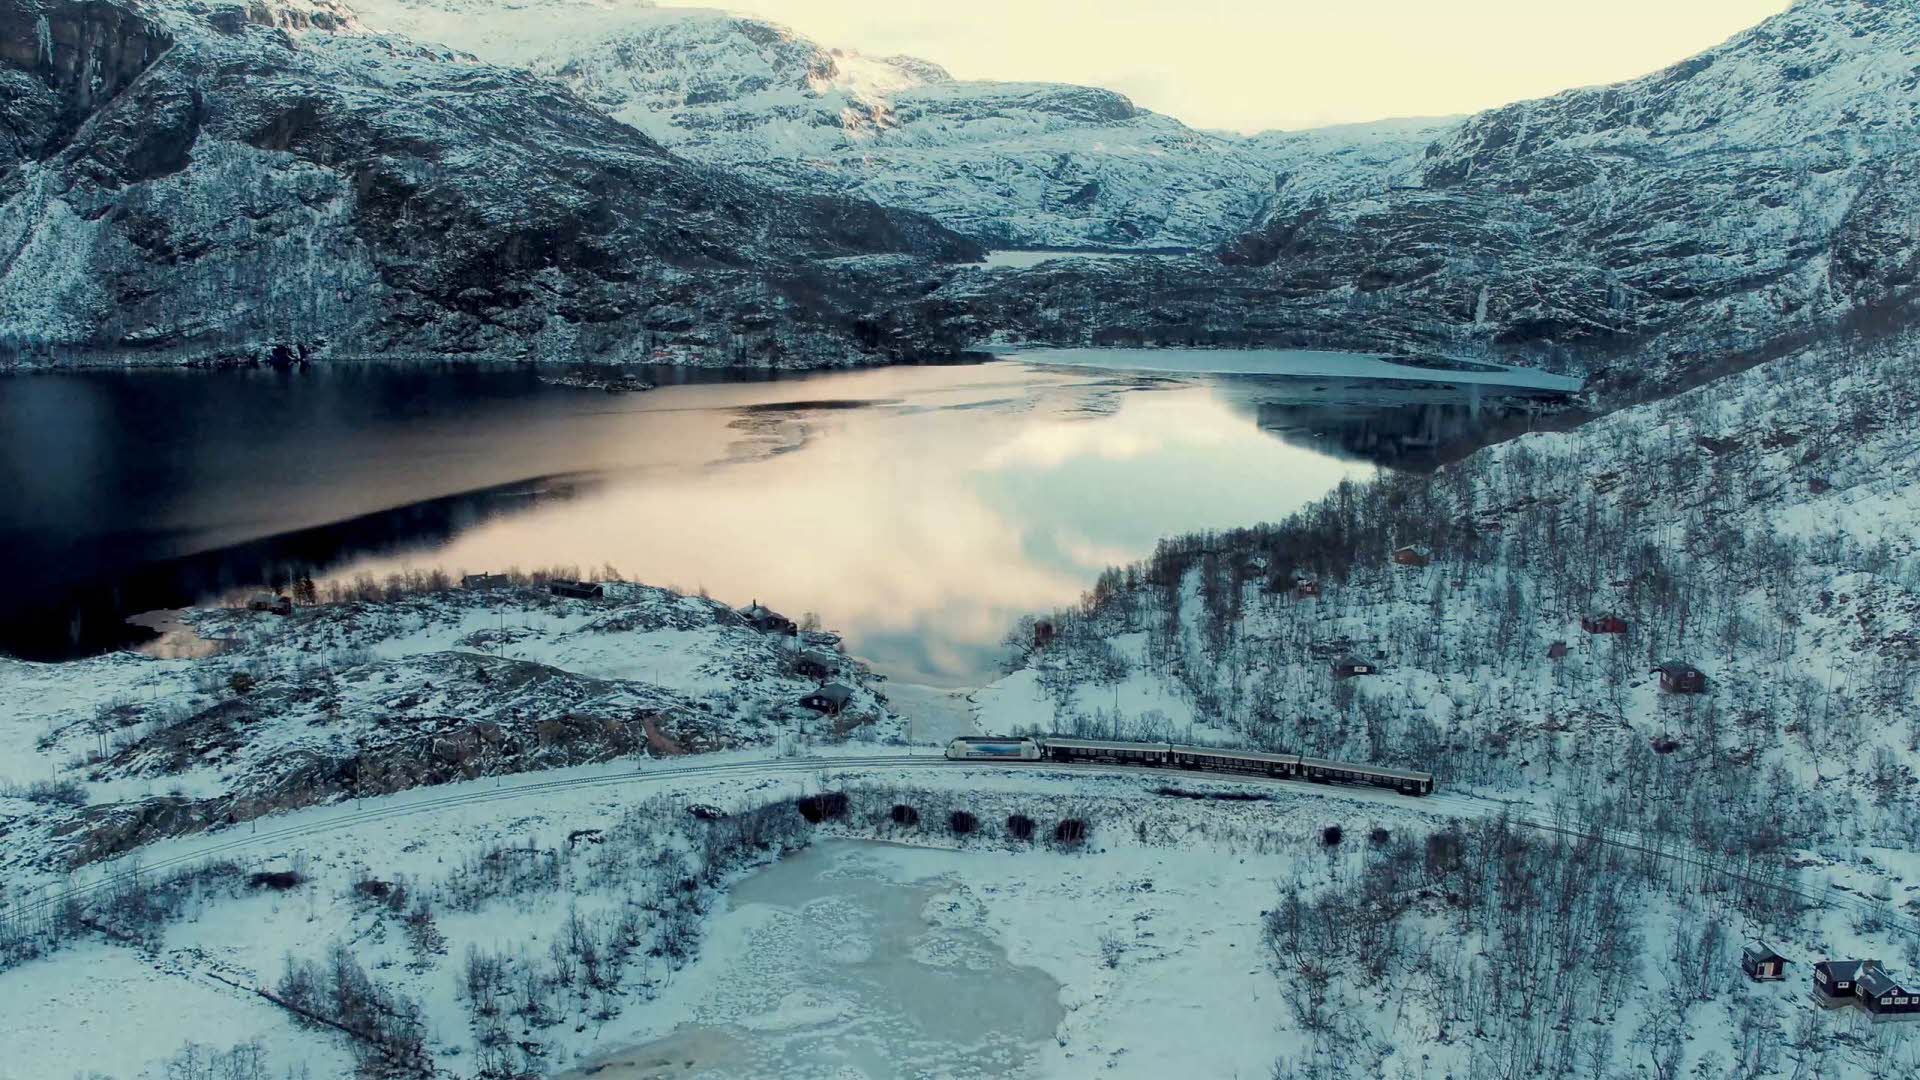 Le chemin de fer de Flåm dans un paysage hivernal froid au bord d’un lac gelé au coucher du soleil